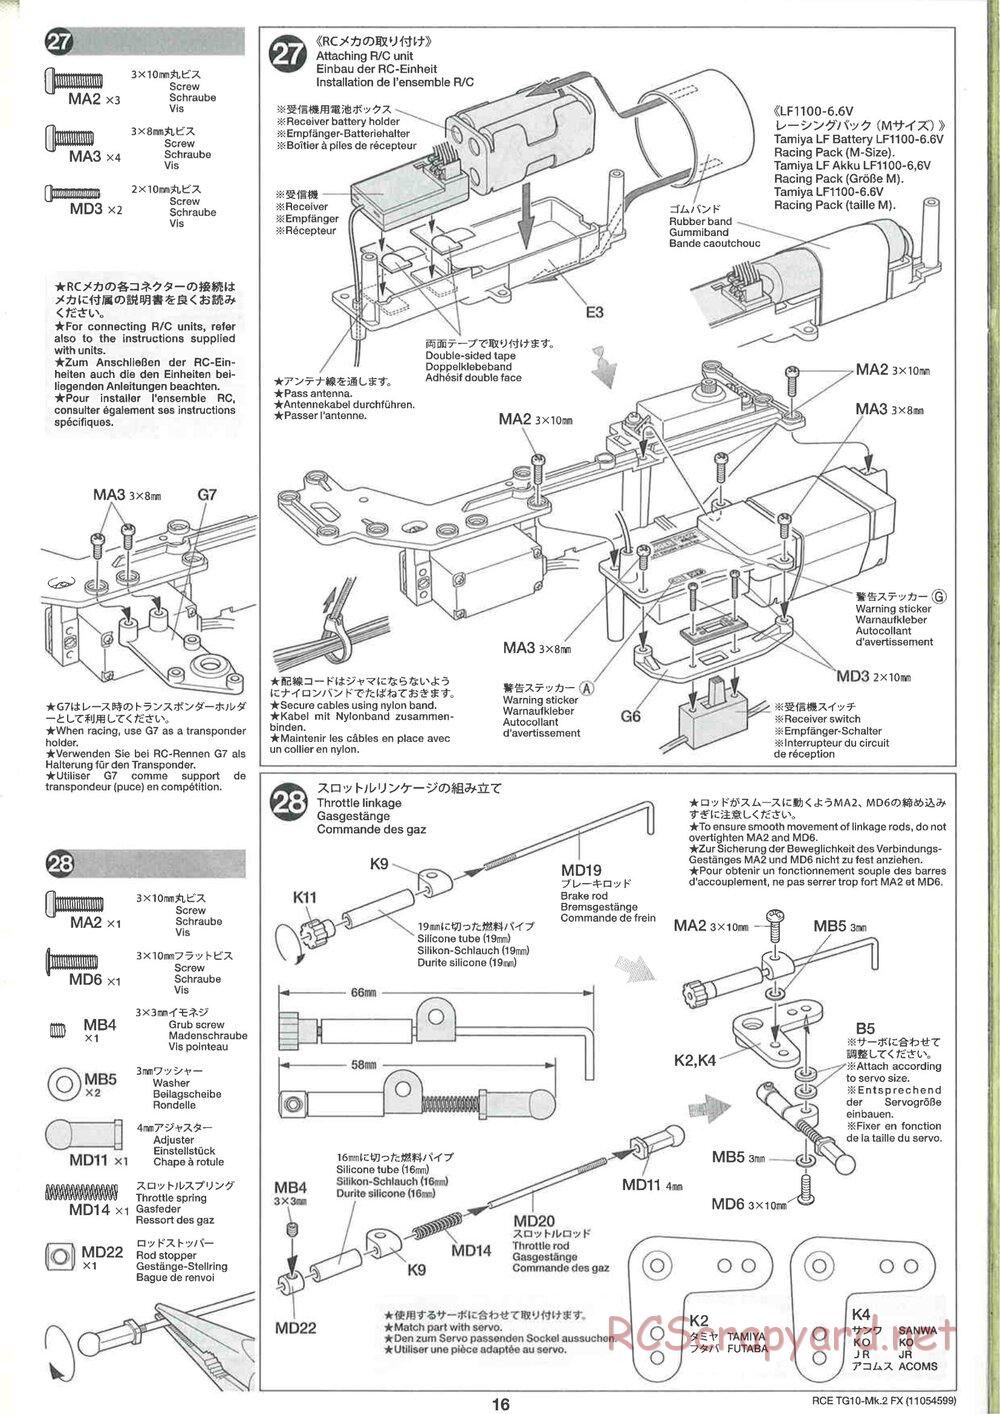 Tamiya - TG10 Mk.2 FX Chassis - Manual - Page 16